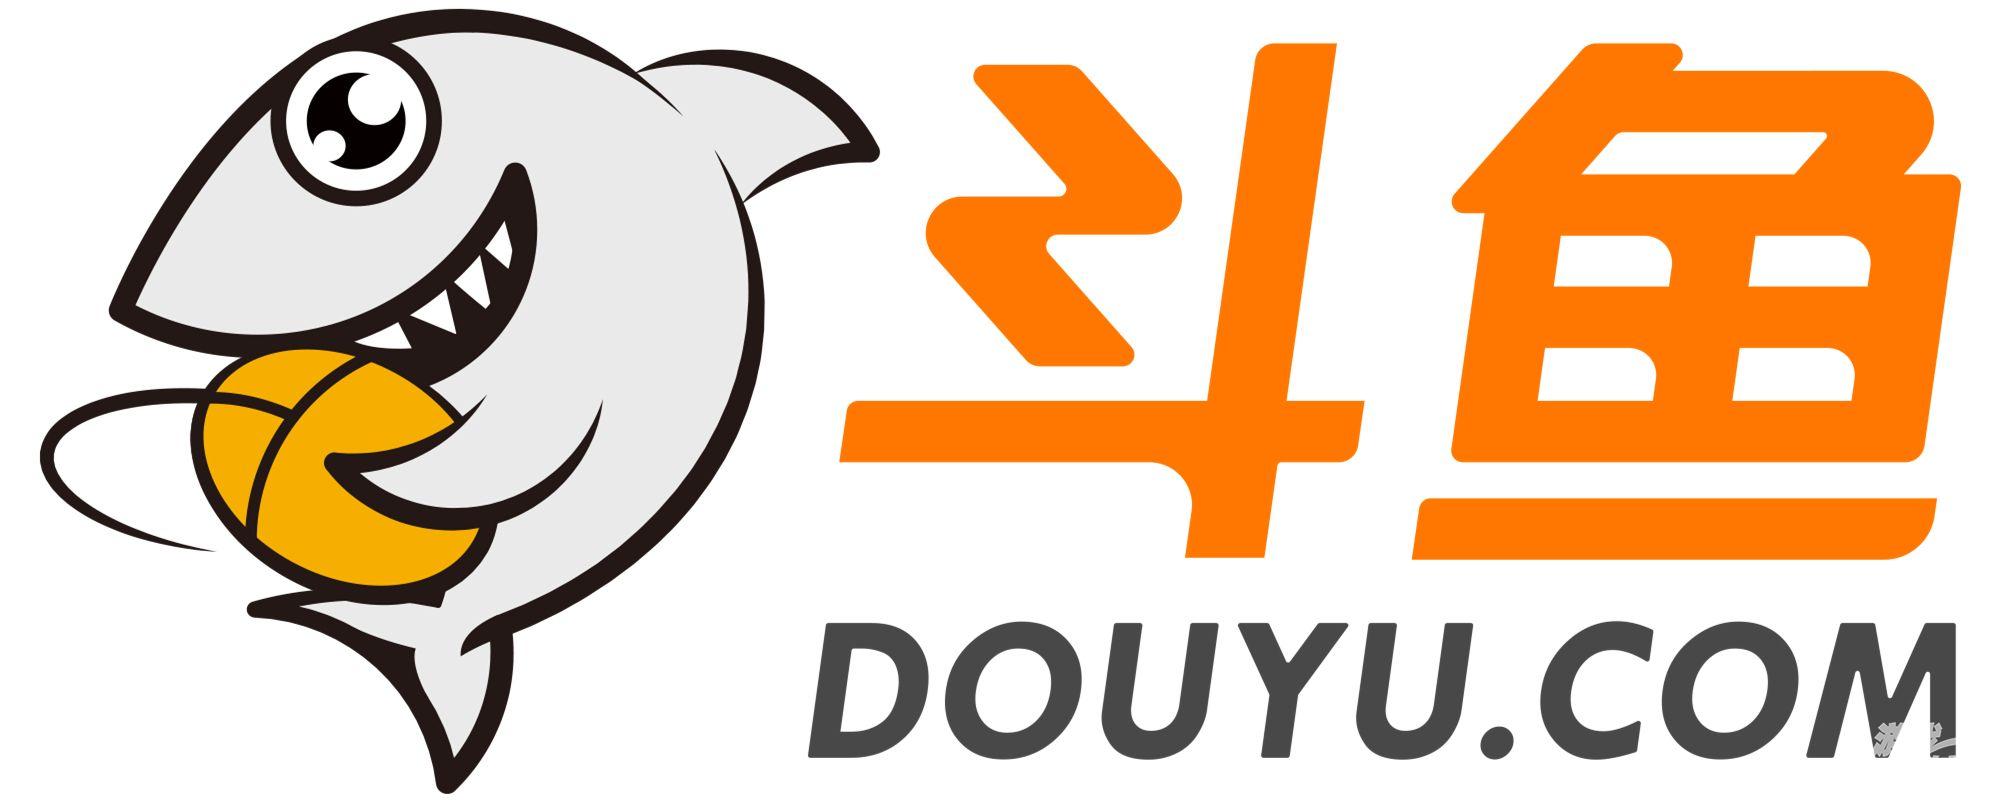 斗鱼logo.jpg